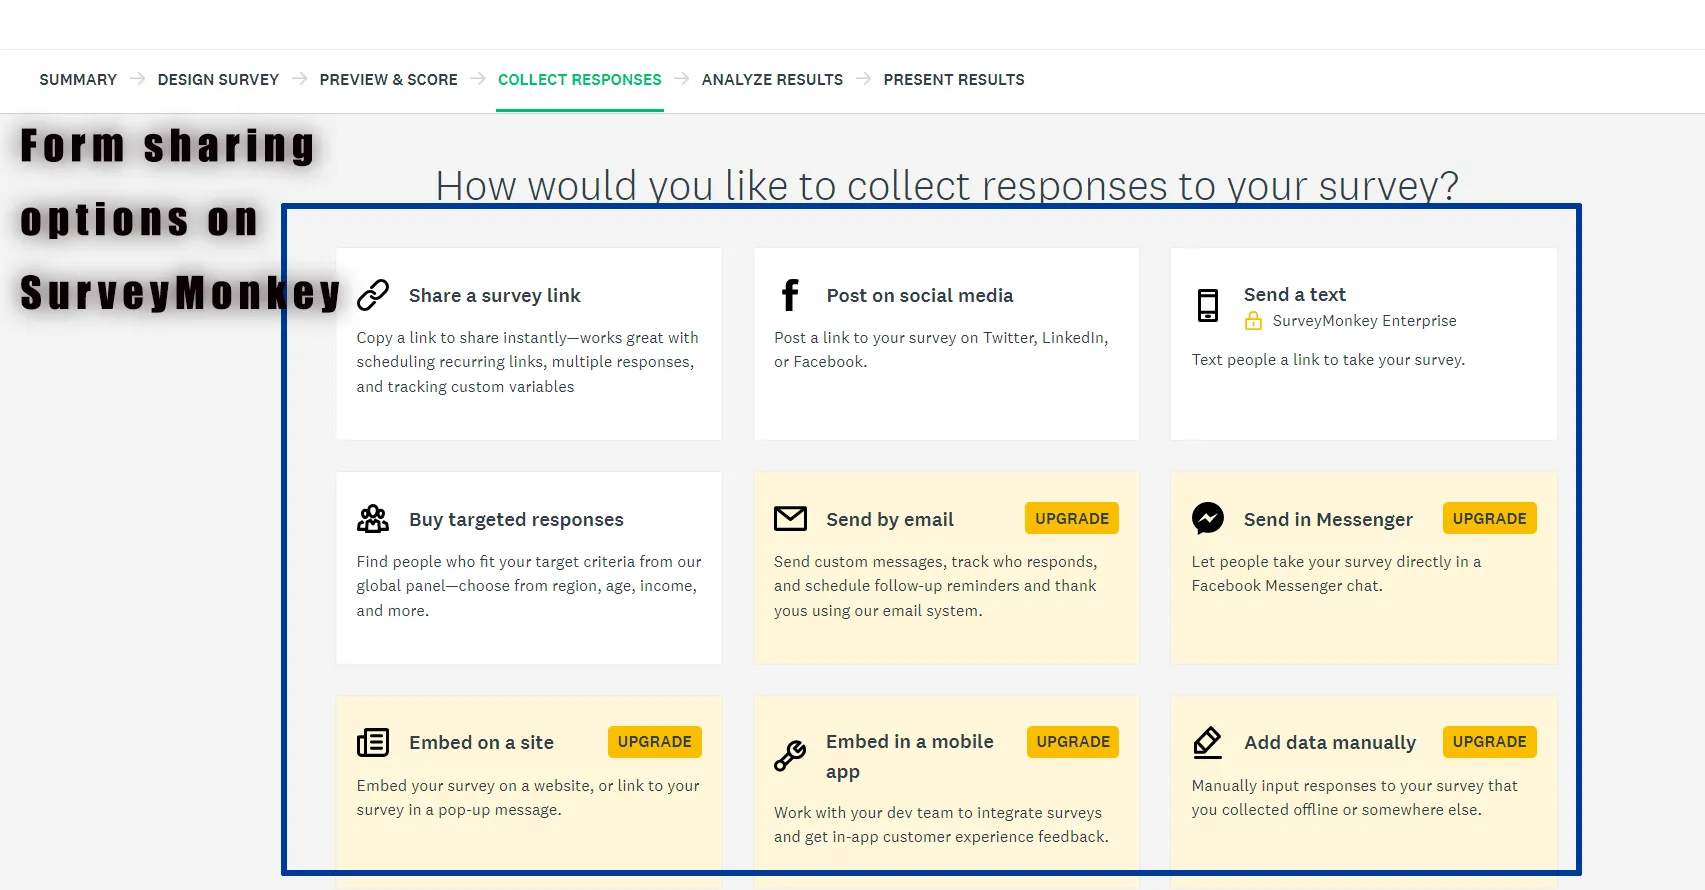 Form Sharing Options on SurveyMonkey